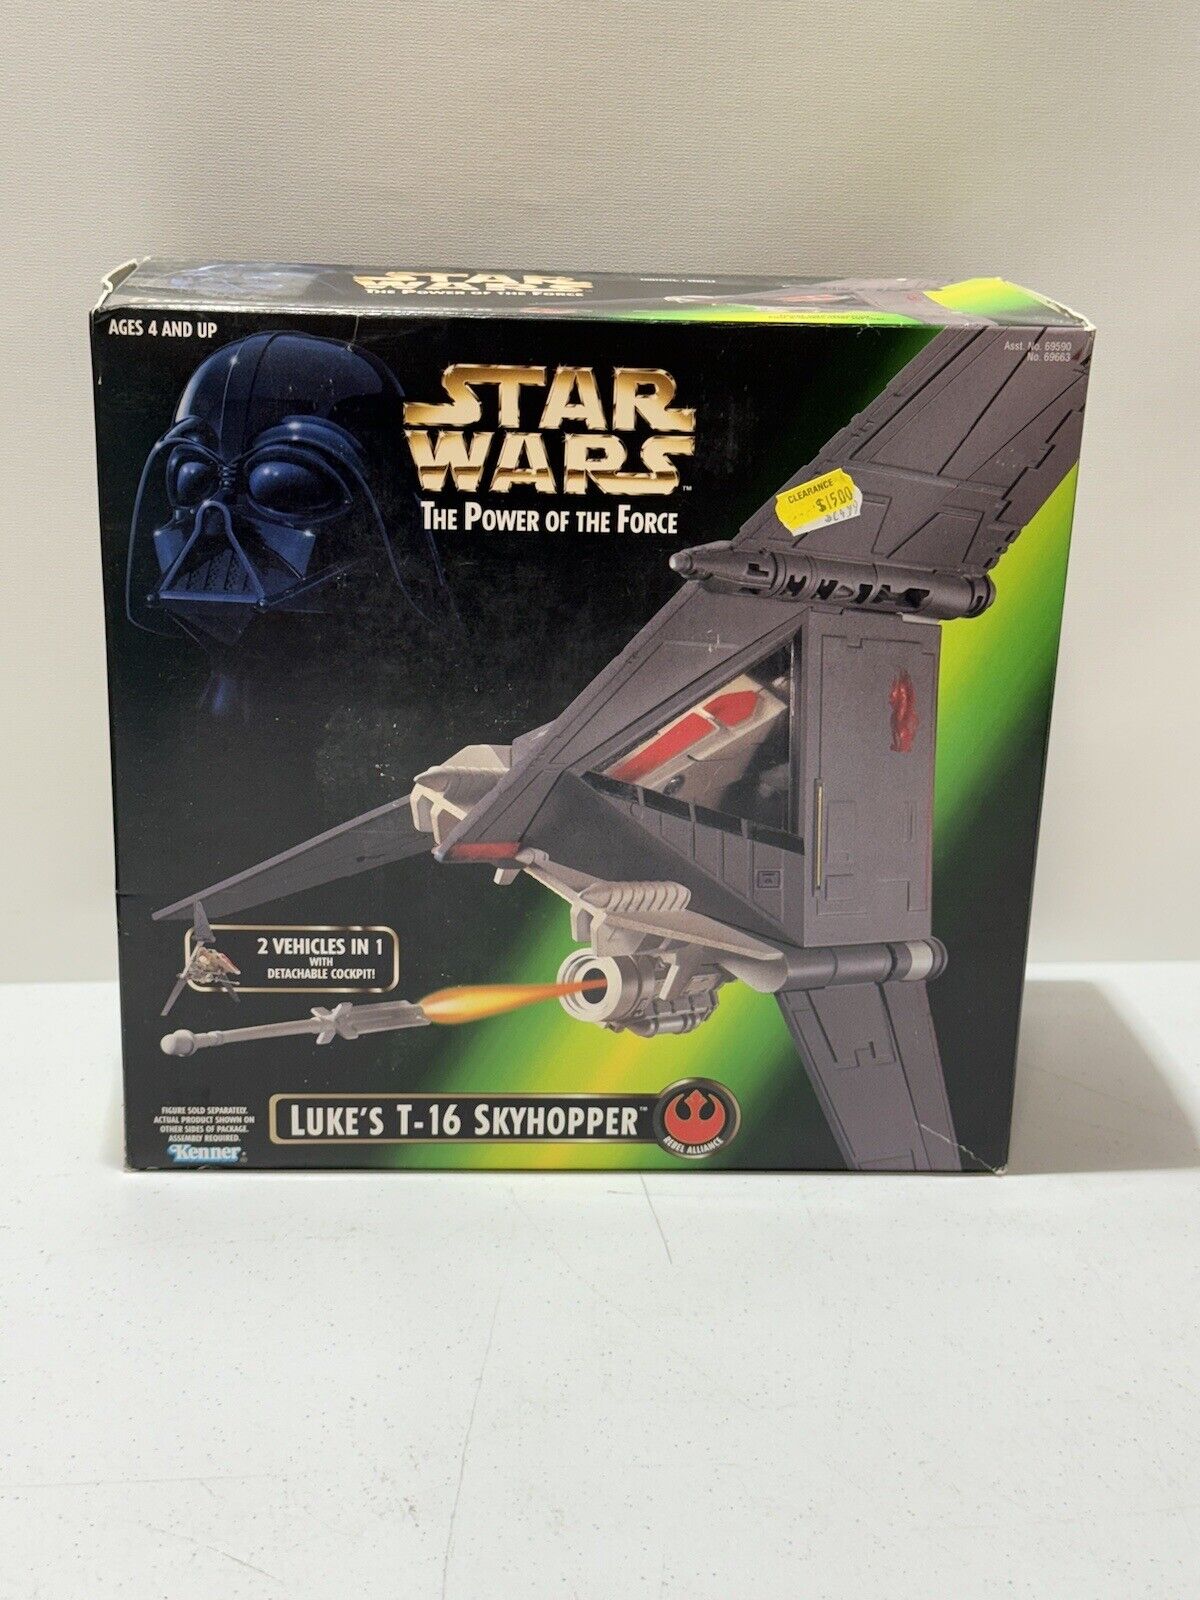 NEW IN BOX Star Wars Power of the Force - Luke's T-16 Skyhopper Kenner Vintage